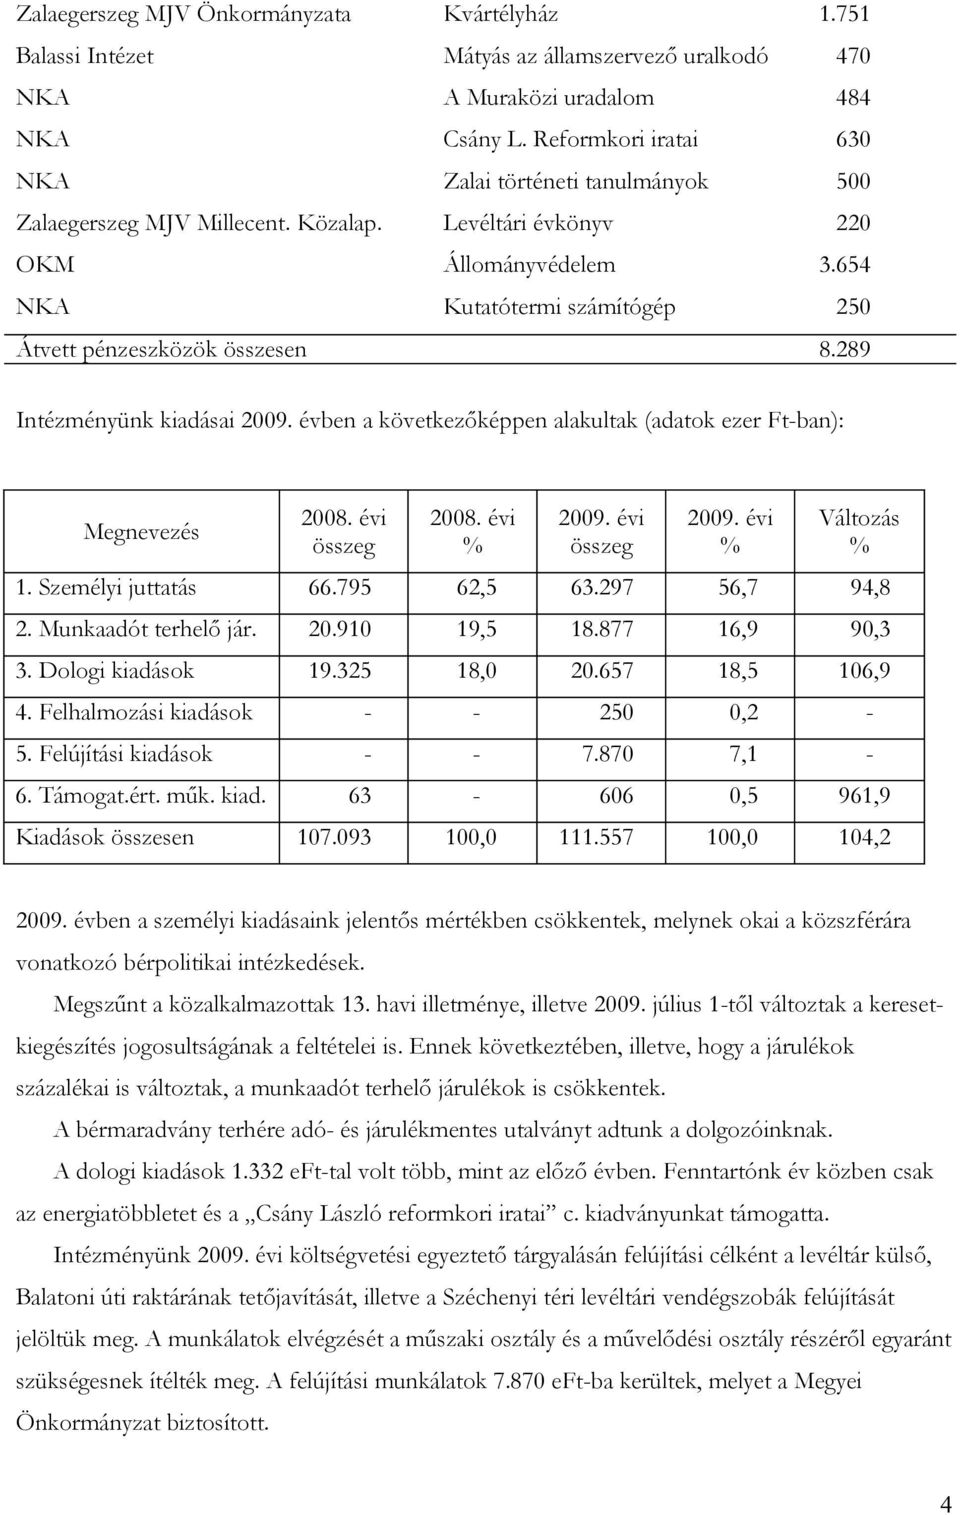 654 NKA Kutatótermi számítógép 250 Átvett pénzeszközök összesen 8.289 Intézményünk kiadásai 2009. évben a következőképpen alakultak (adatok ezer Ft-ban): Megnevezés 2008. évi összeg 2008. évi % 2009.